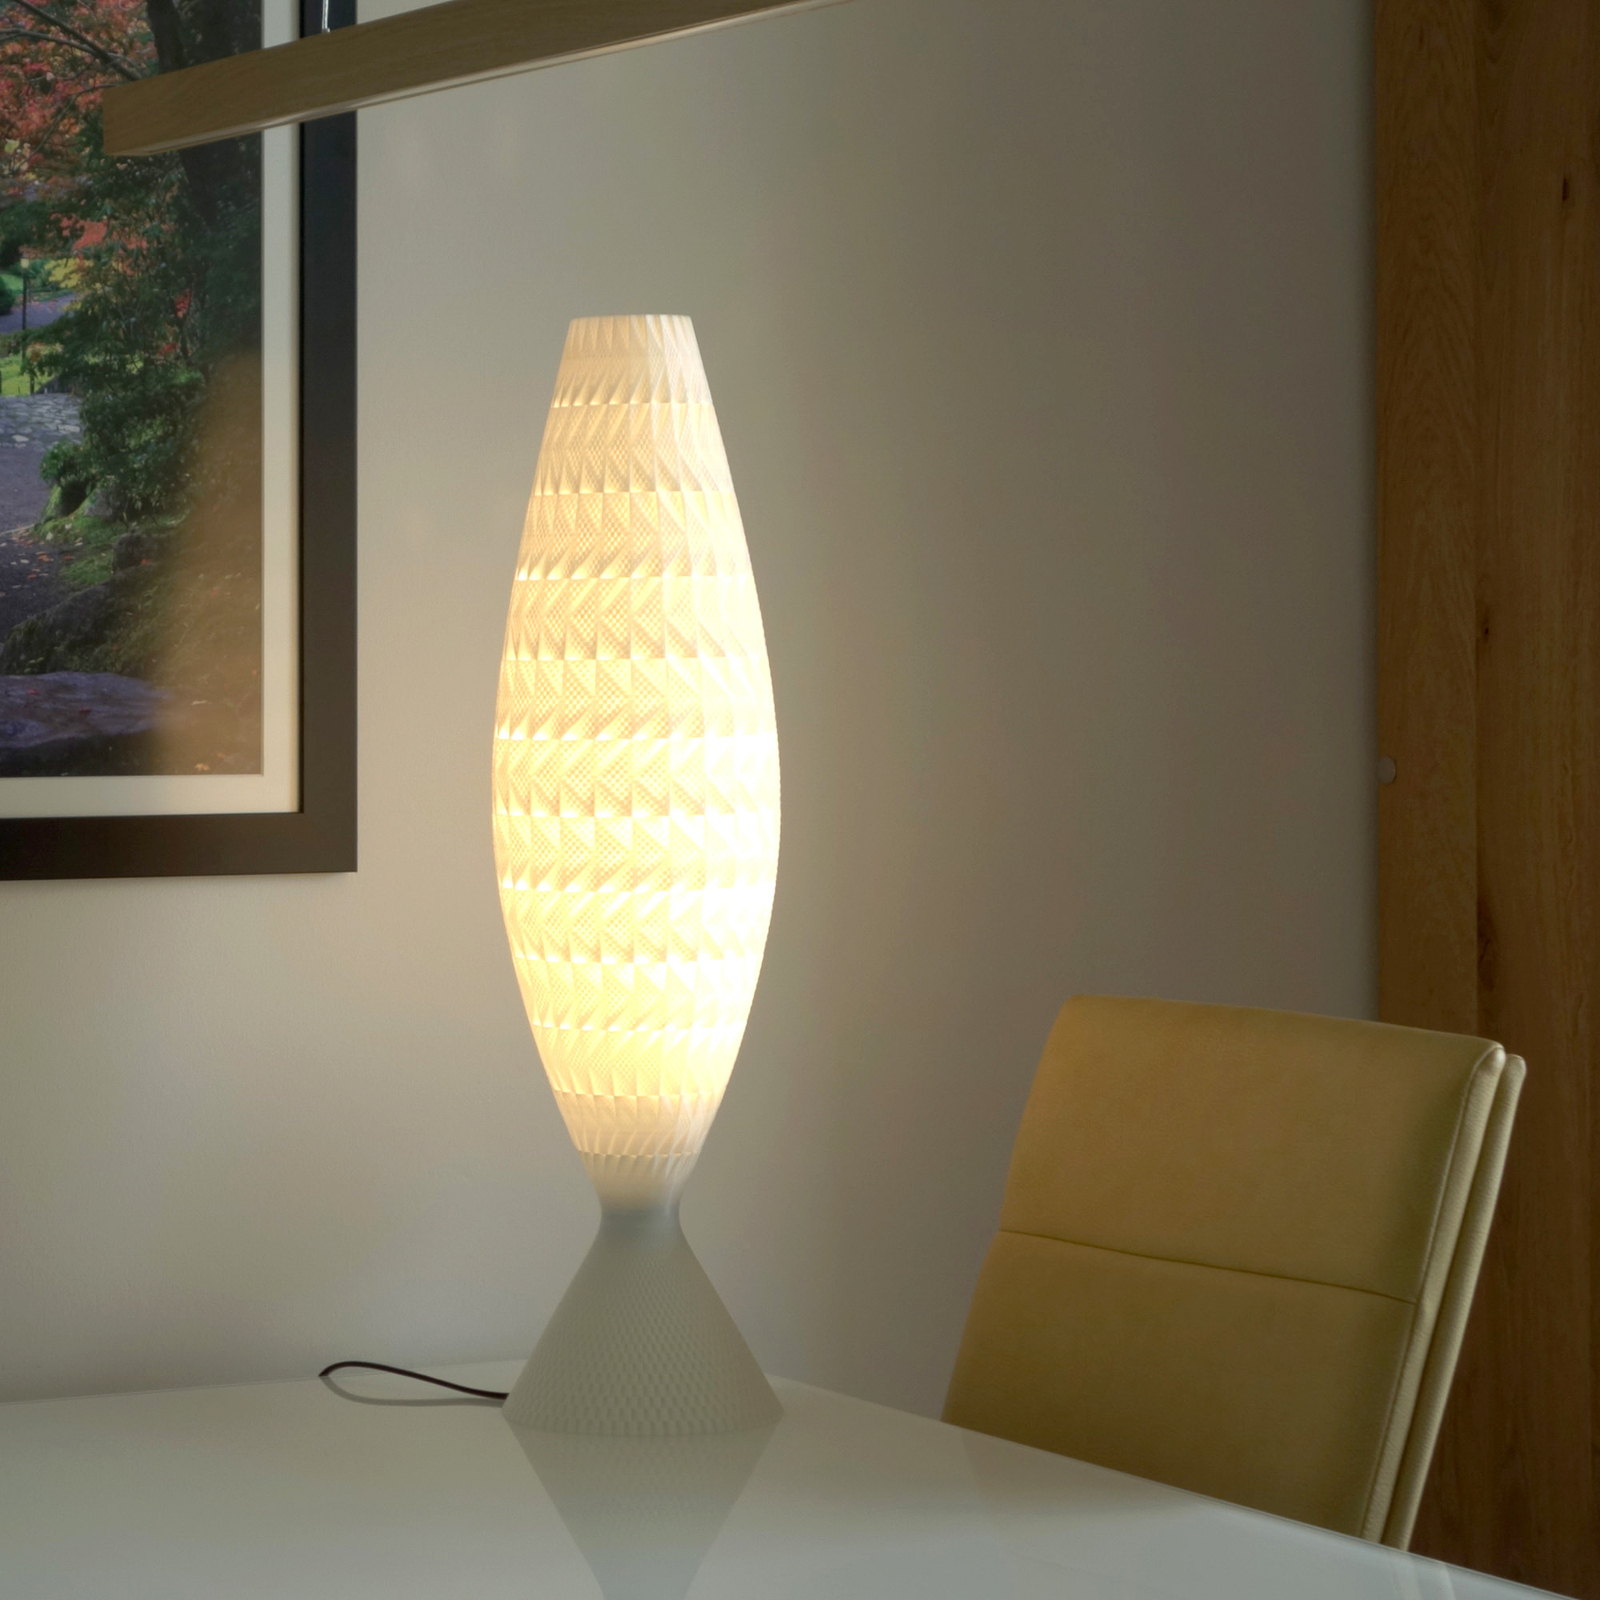 Fraktal tafellamp gemaakt van biomateriaal, zijde, 65 cm